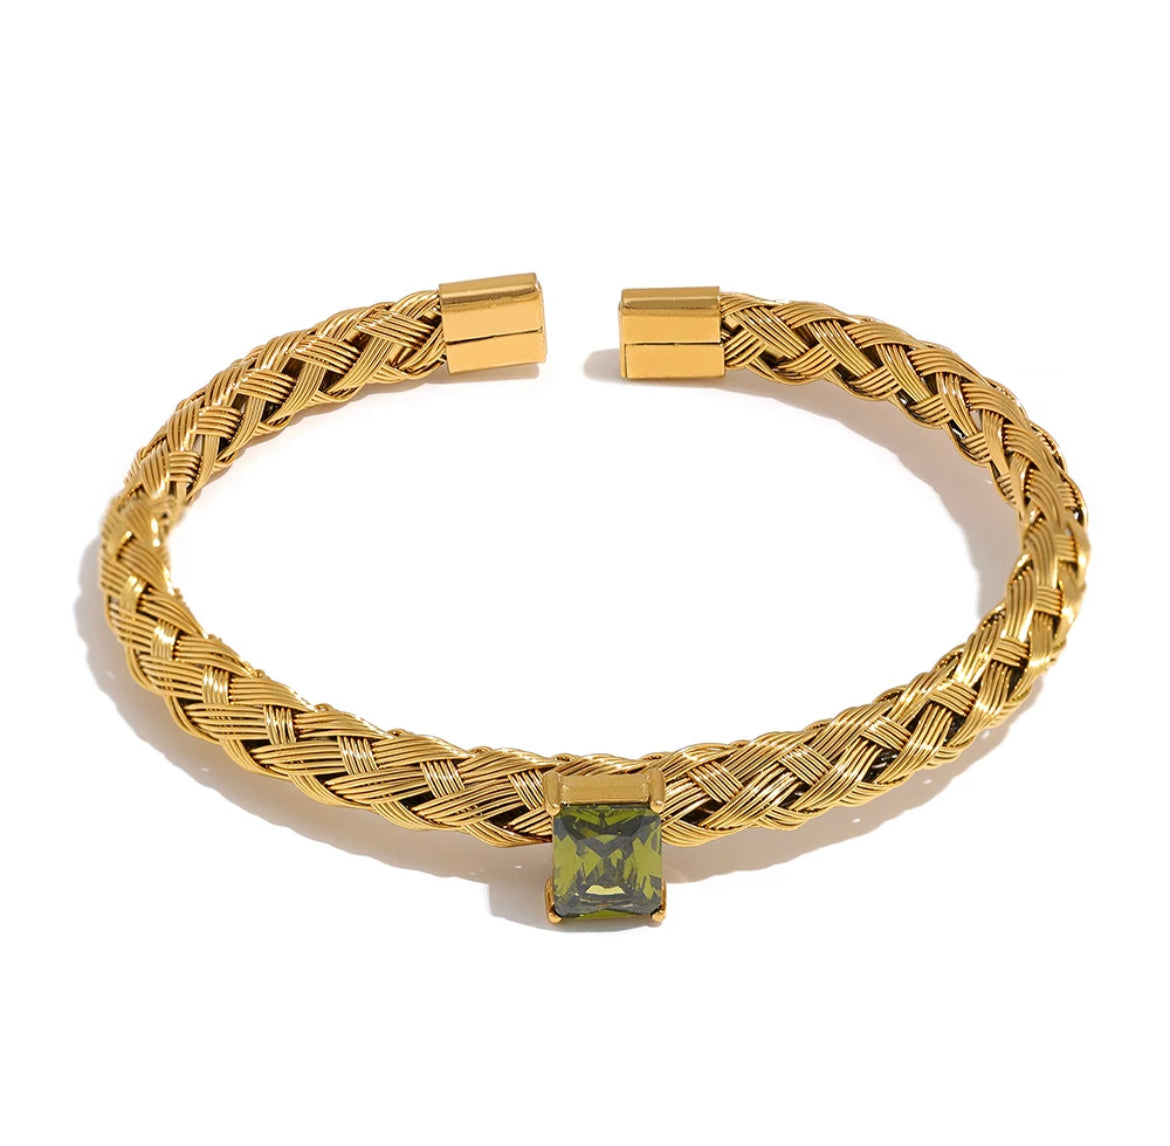 Cuff Bracelets - Peridot Green Stone 18K Gold Plated | Boho & Mala